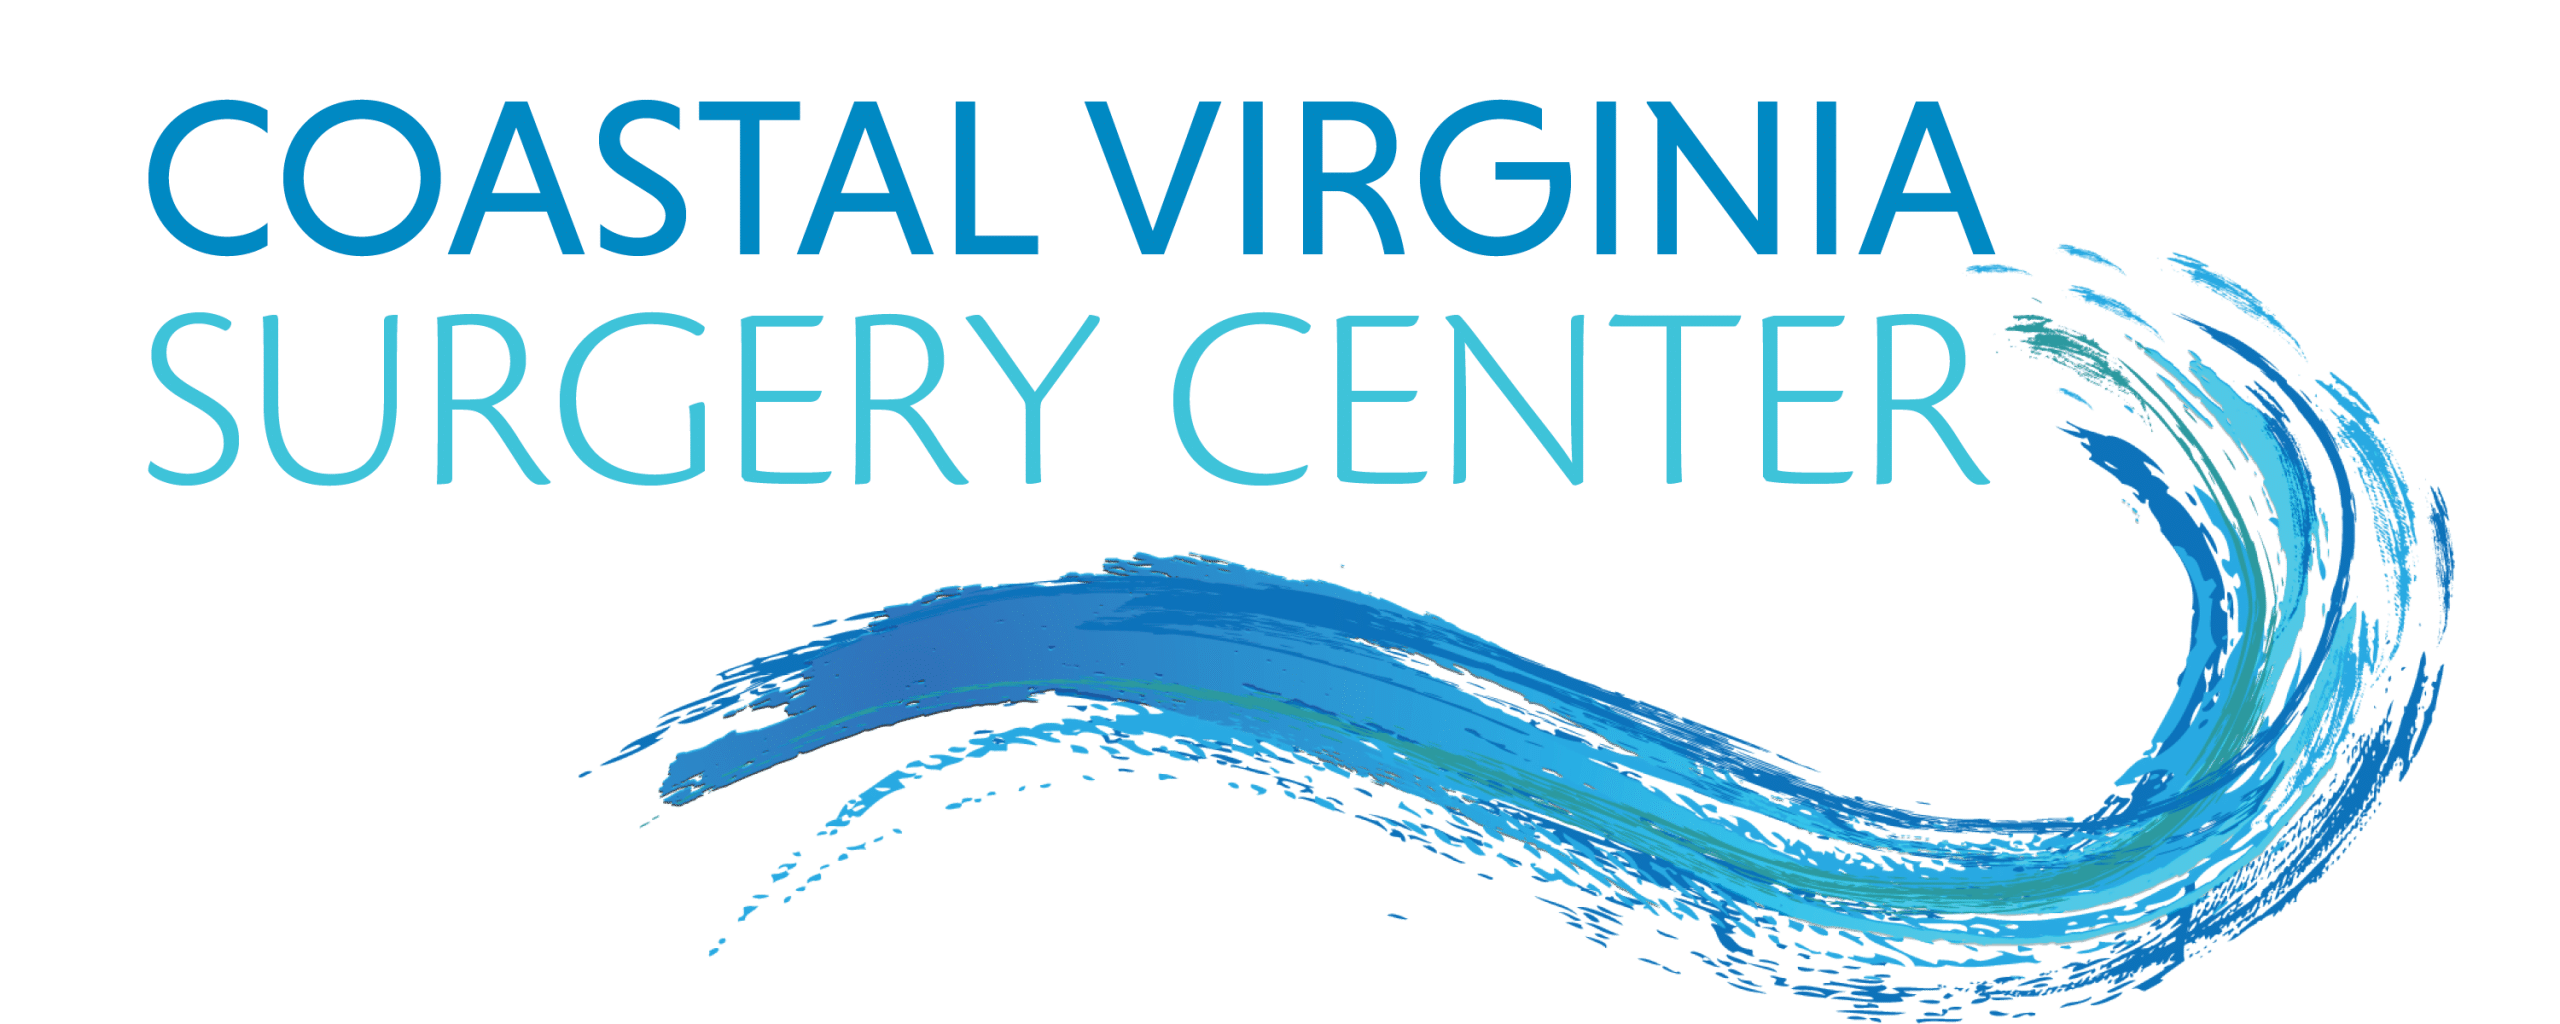 Coastal Virginia Surgery Center logo